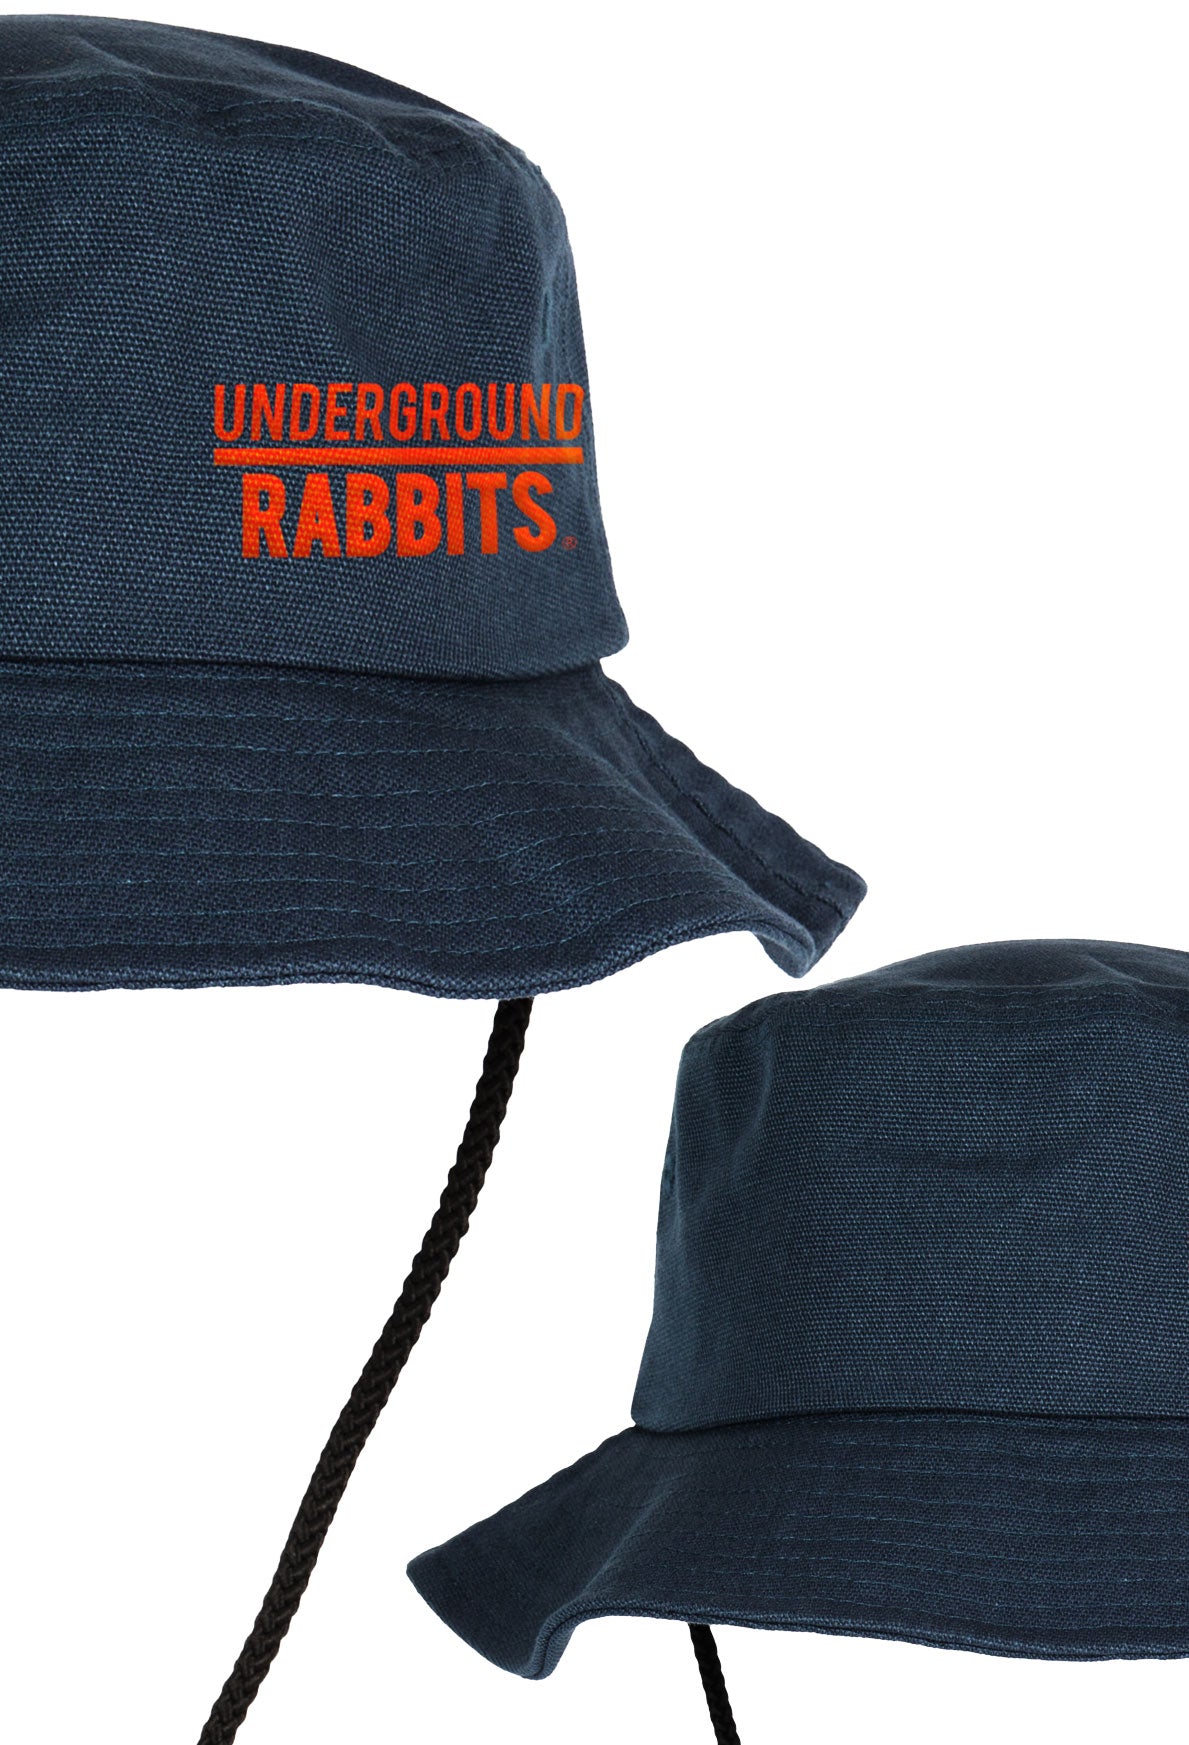 Gorro Adventurer - Underground Rabbits